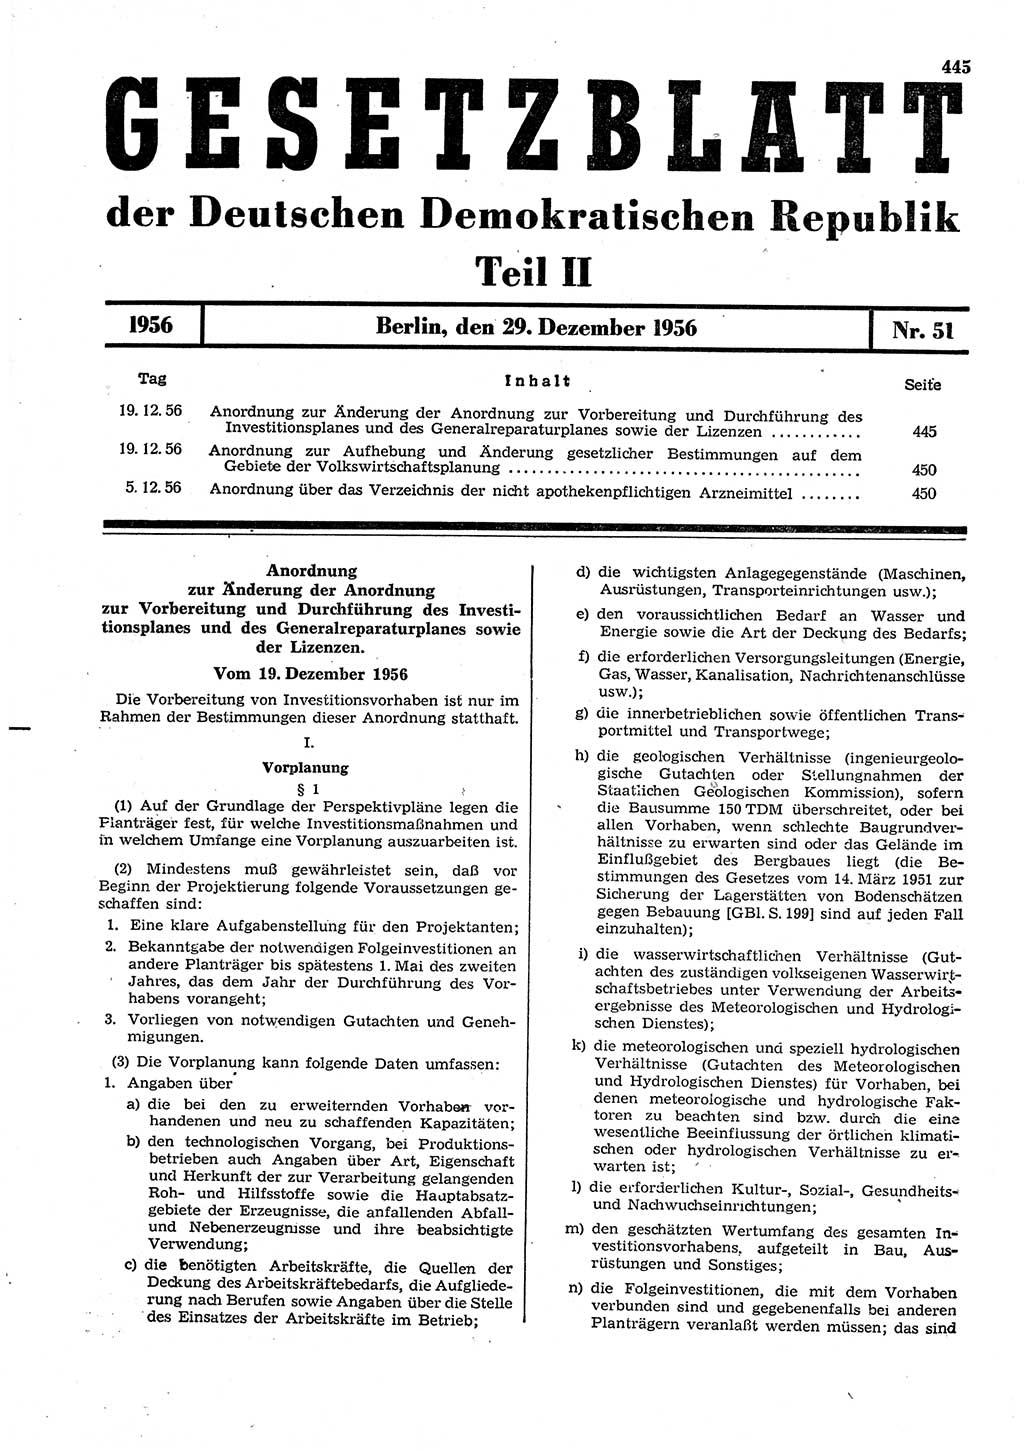 Gesetzblatt (GBl.) der Deutschen Demokratischen Republik (DDR) Teil ⅠⅠ 1956, Seite 445 (GBl. DDR ⅠⅠ 1956, S. 445)